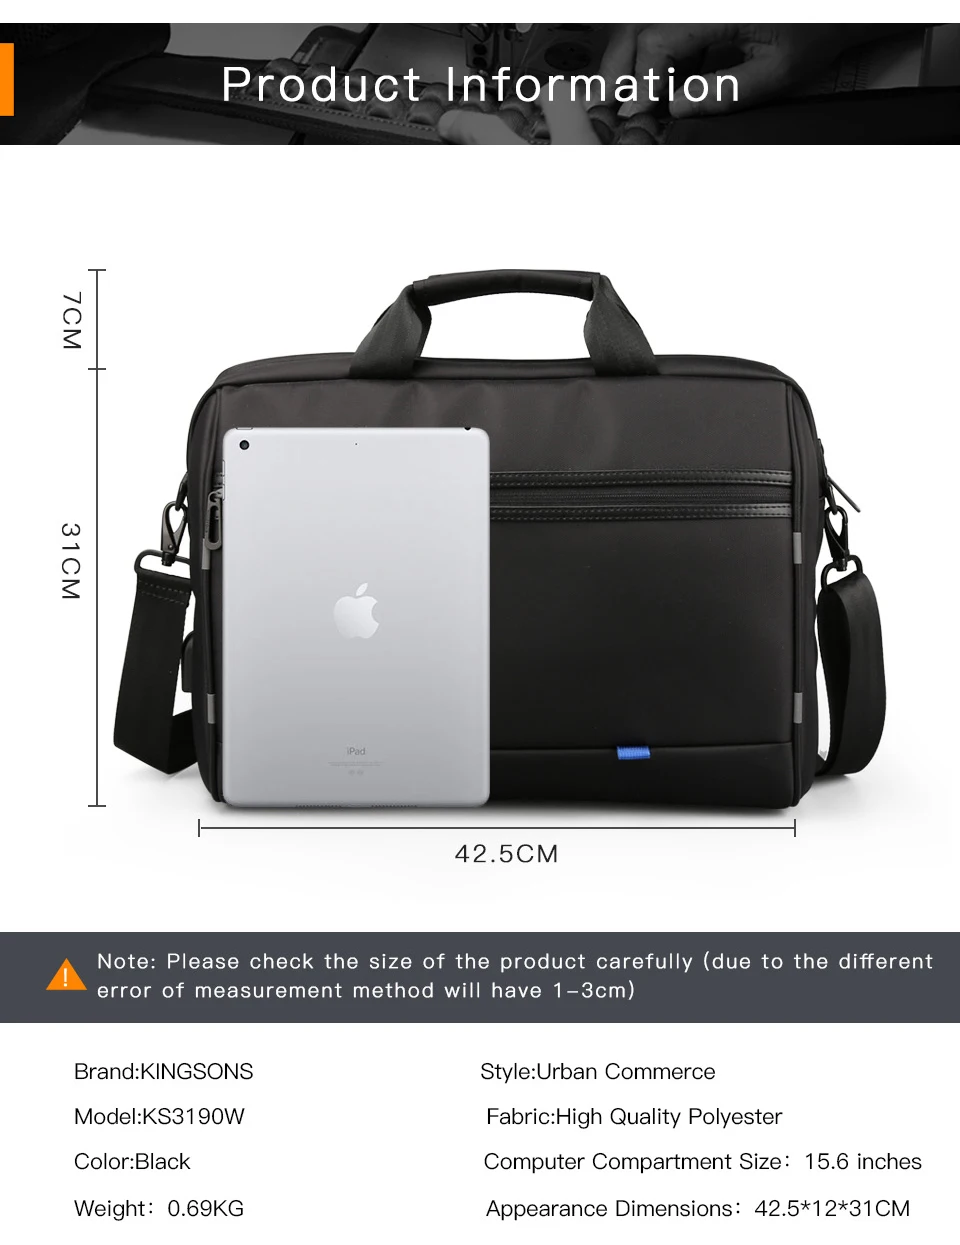 Kingsons высокое качество сумки ноутбук для Для мужчин и Для женщин Путешествия Bussiness Тетрадь мешок большой Ёмкость 15 дюймов компьютер